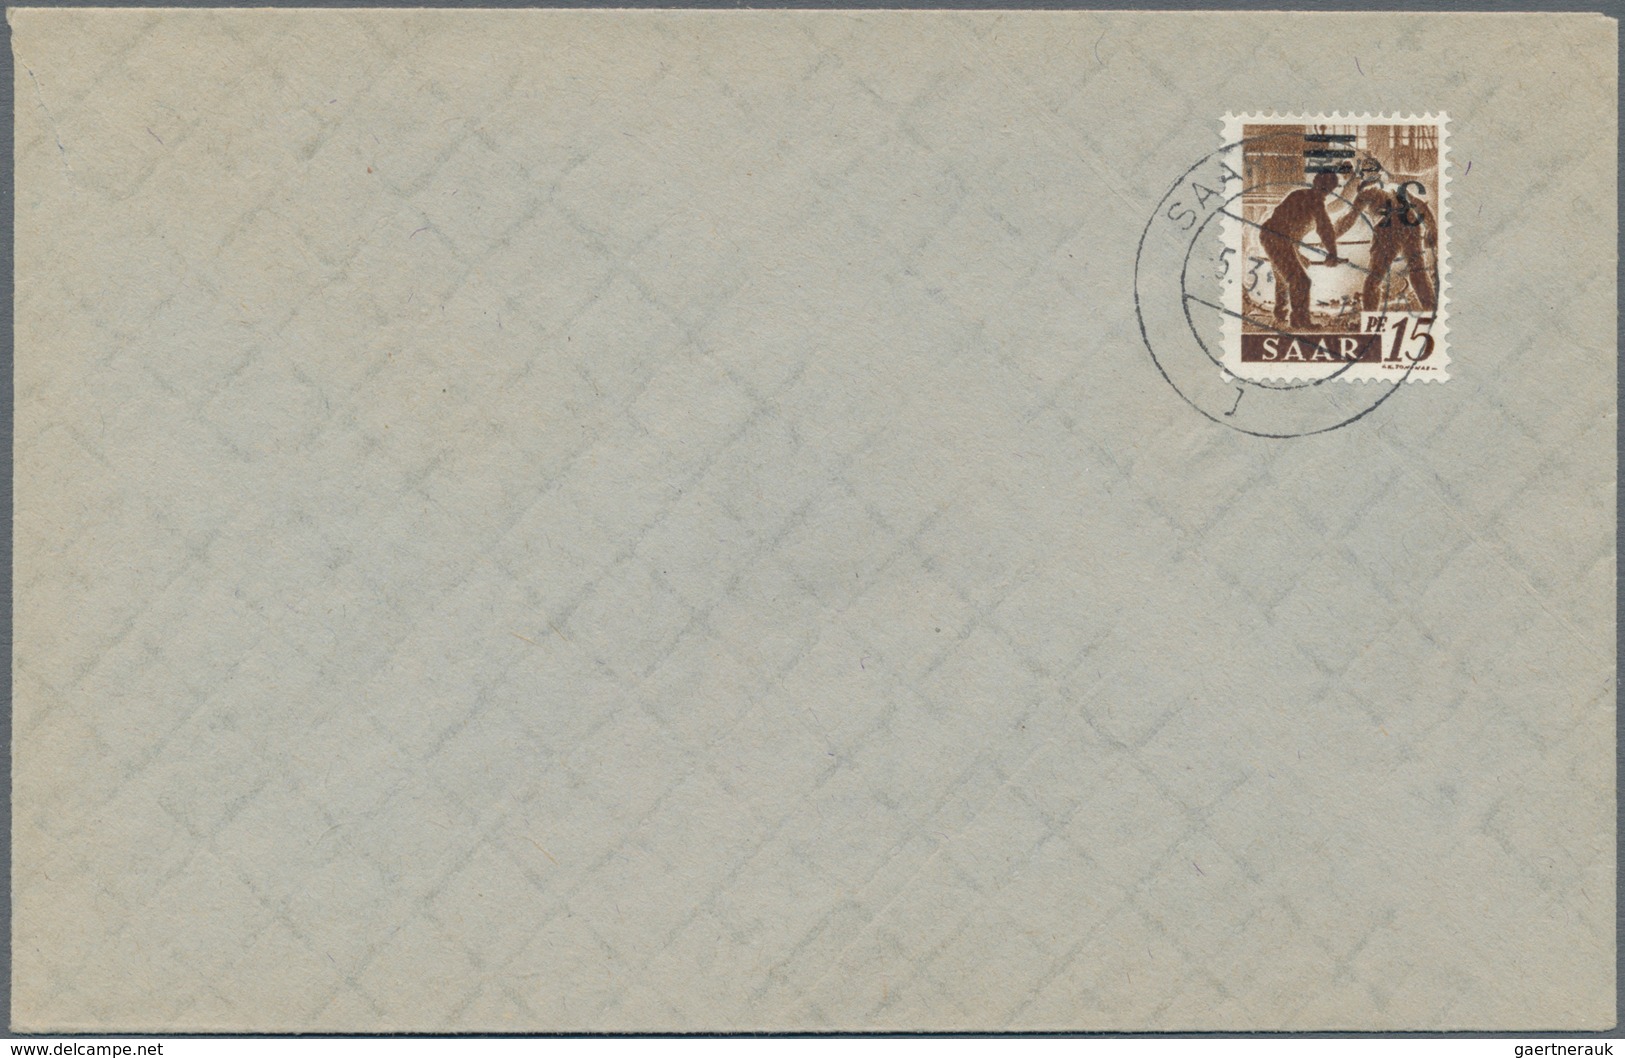 Saarland (1947/56): 1947, Freimarke 3 F Auf 15 Pfg. Mit Kopfstehendem Aufdruck Auf Blanko-Brief, Fot - Unused Stamps